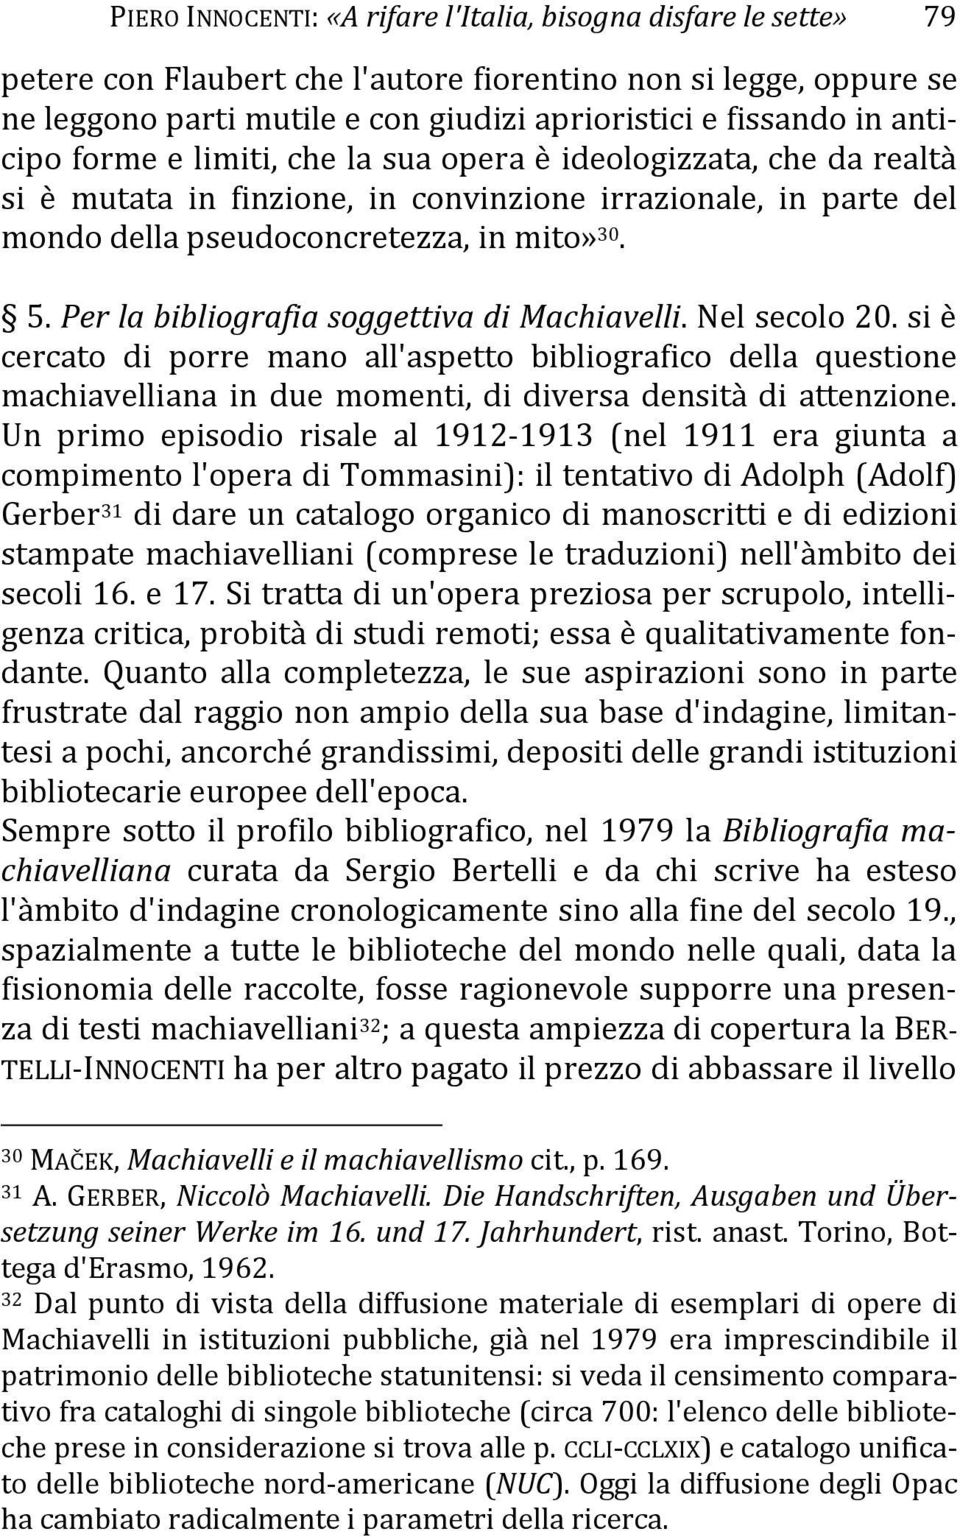 Per la bibliografia soggettiva di Machiavelli. Nel secolo 20. si è cercato di porre mano all'aspetto bibliografico della questione machiavelliana in due momenti, di diversa densità di attenzione.